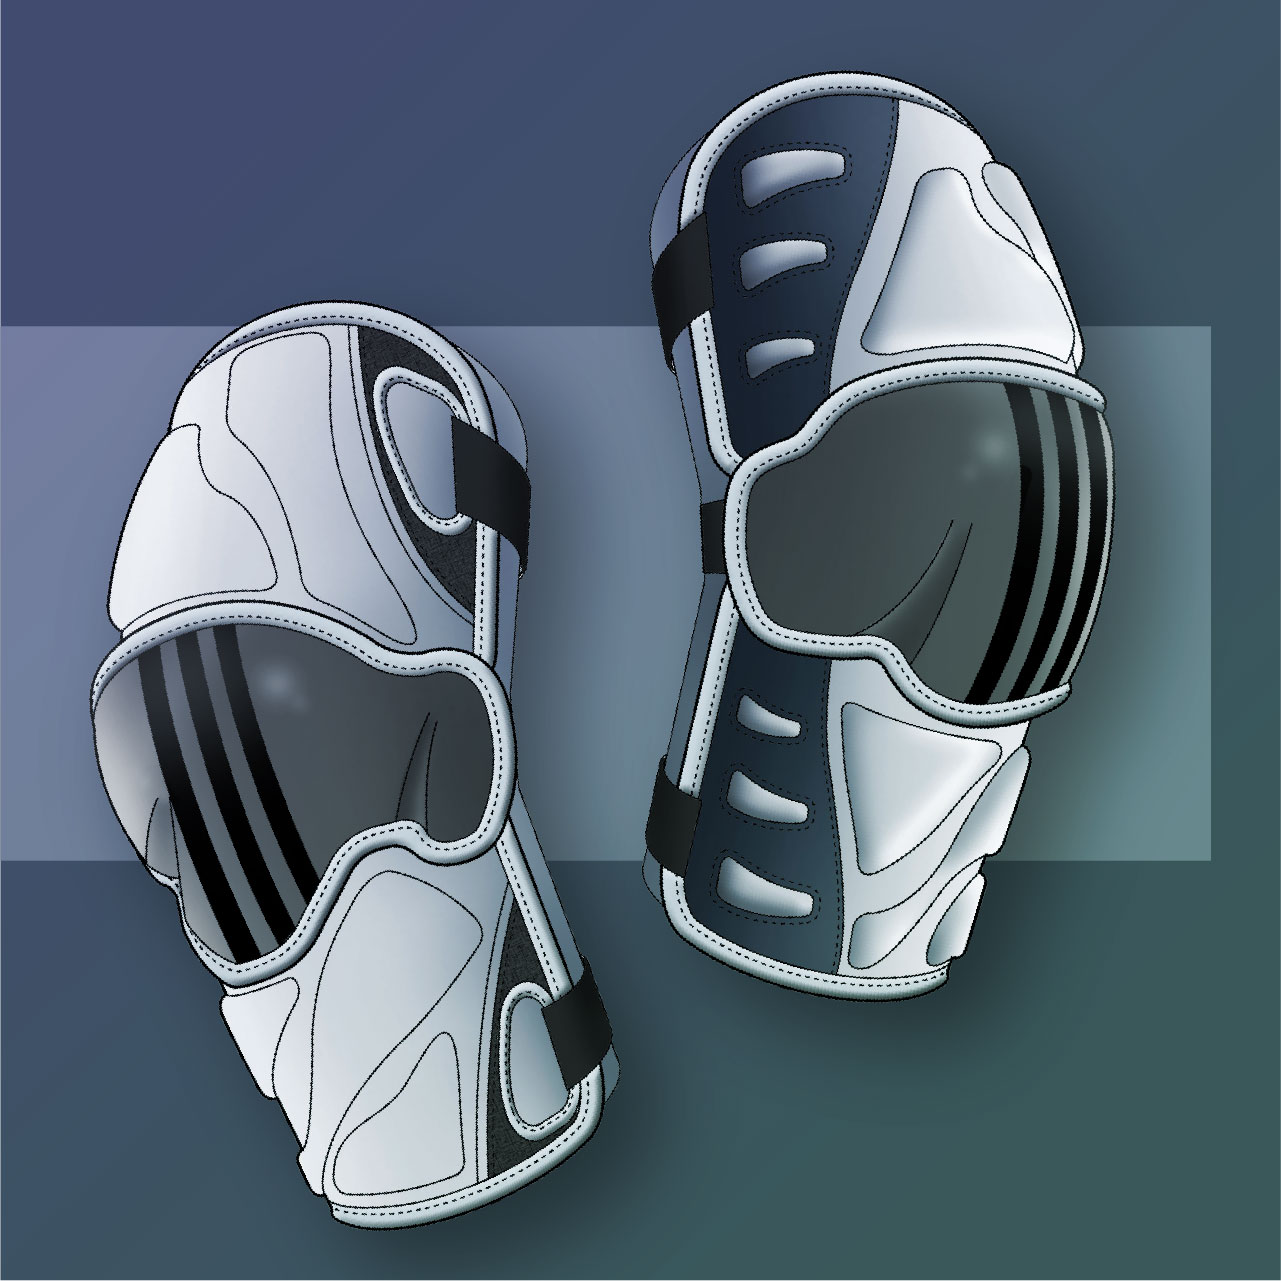 Adidas Lacrosse Gear | Knee Pad Illustrations 